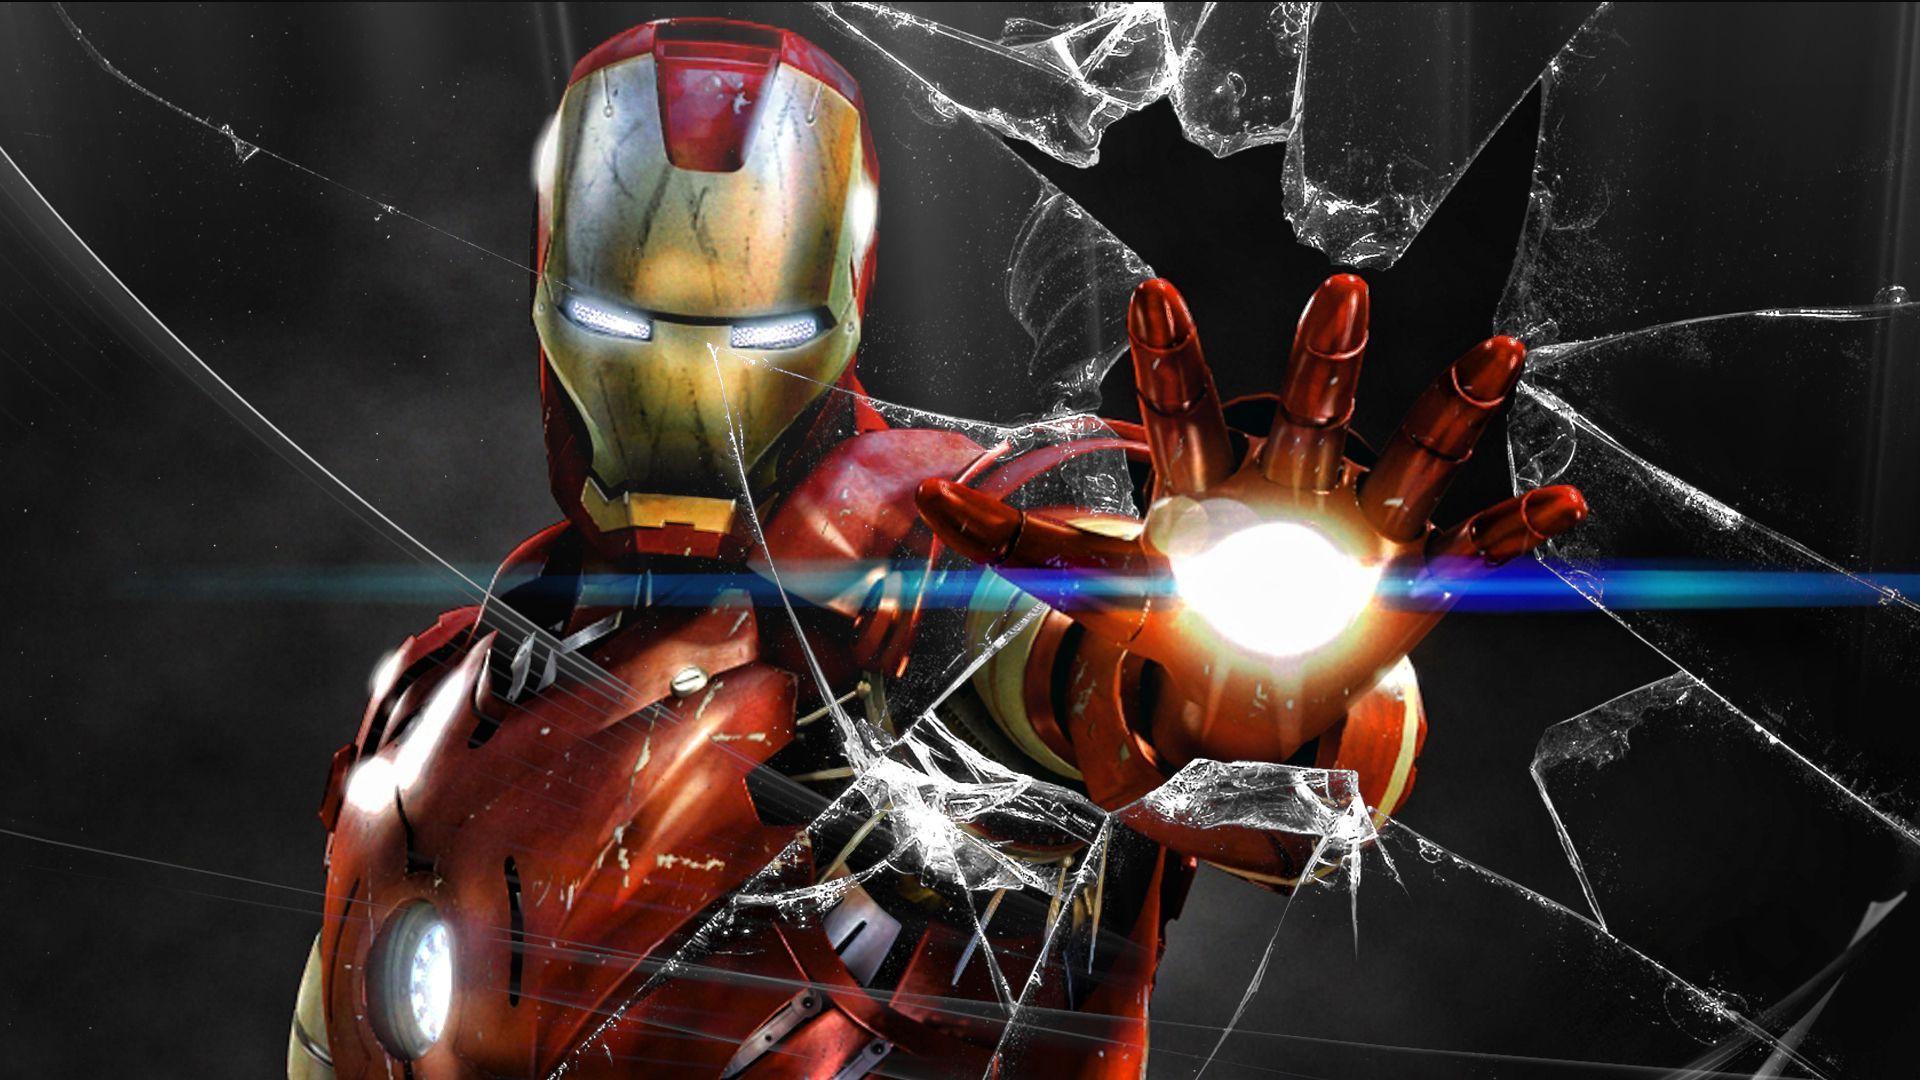 Sắm ngay hình nền Iron Man đẹp nhất cho máy tính của bạn và tạo nên một màn hình nổi bật, đặc biệt và thú vị. Máy tính sẽ trở nên gần gũi, thú vị với nhân vật Iron Man hùng mạnh, tài năng và sáng tạo.